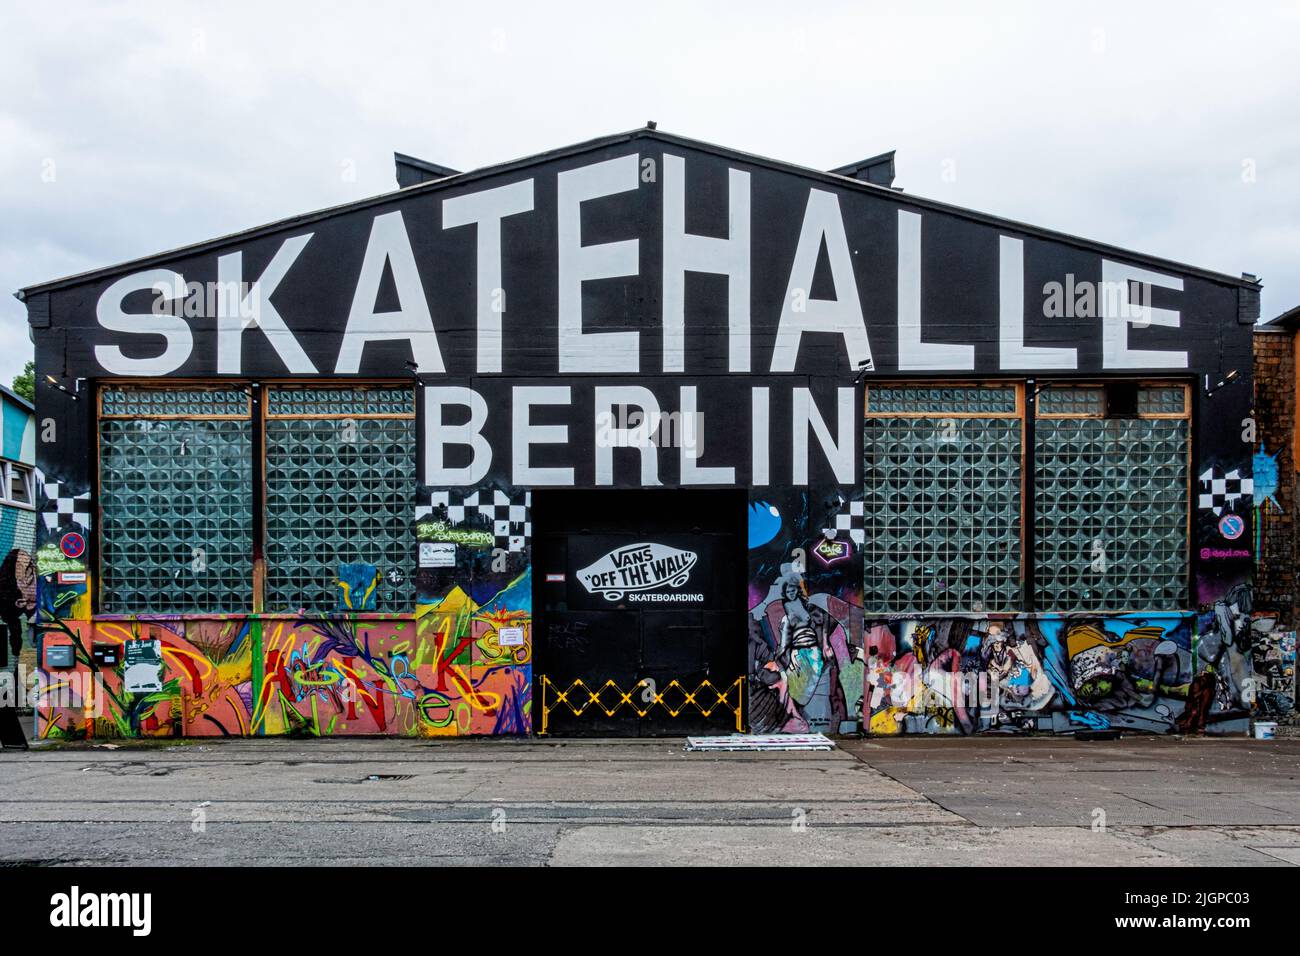 Berlin, Friedrichshain, RAW Gelände. Skatehalle skate boarding hall in old railway workshop building Stock Photo